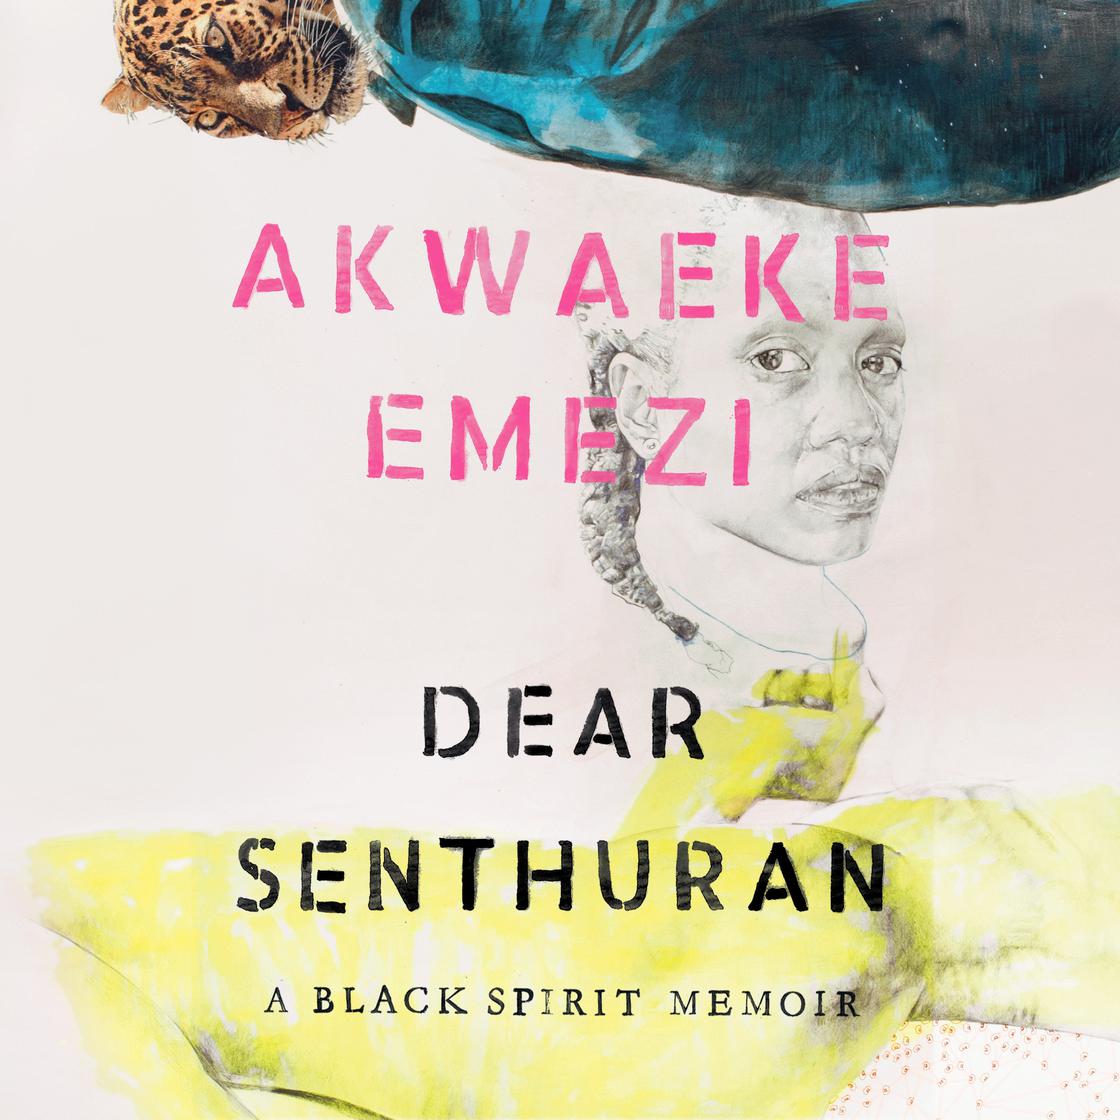 Akwaeke Emezi: Dear Senthuran (AudiobookFormat, 2021, Penguin Random House Audio Publishing Group)